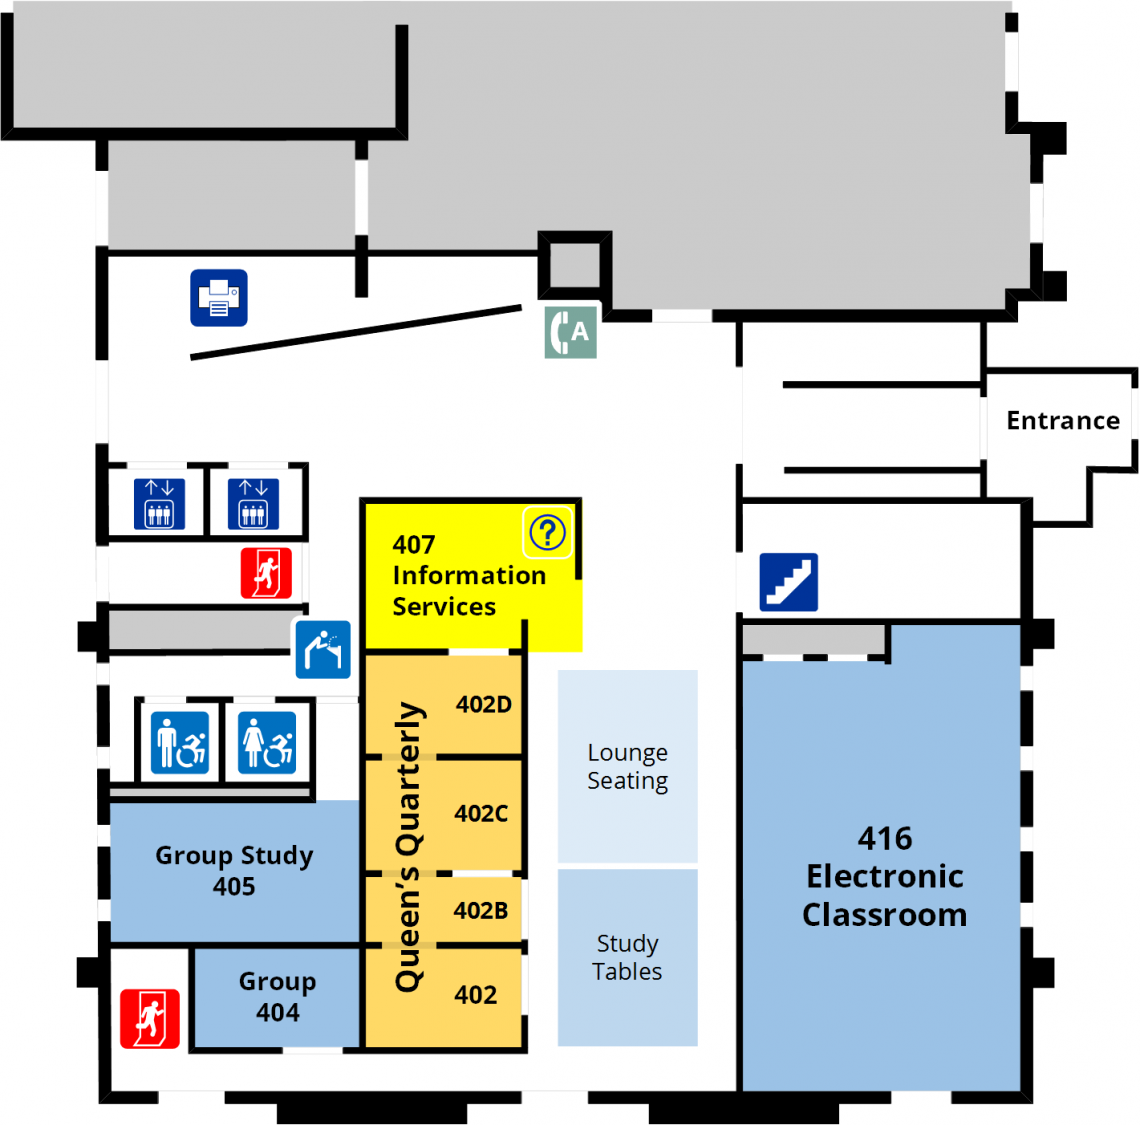 Douglas library ground floor floor plan